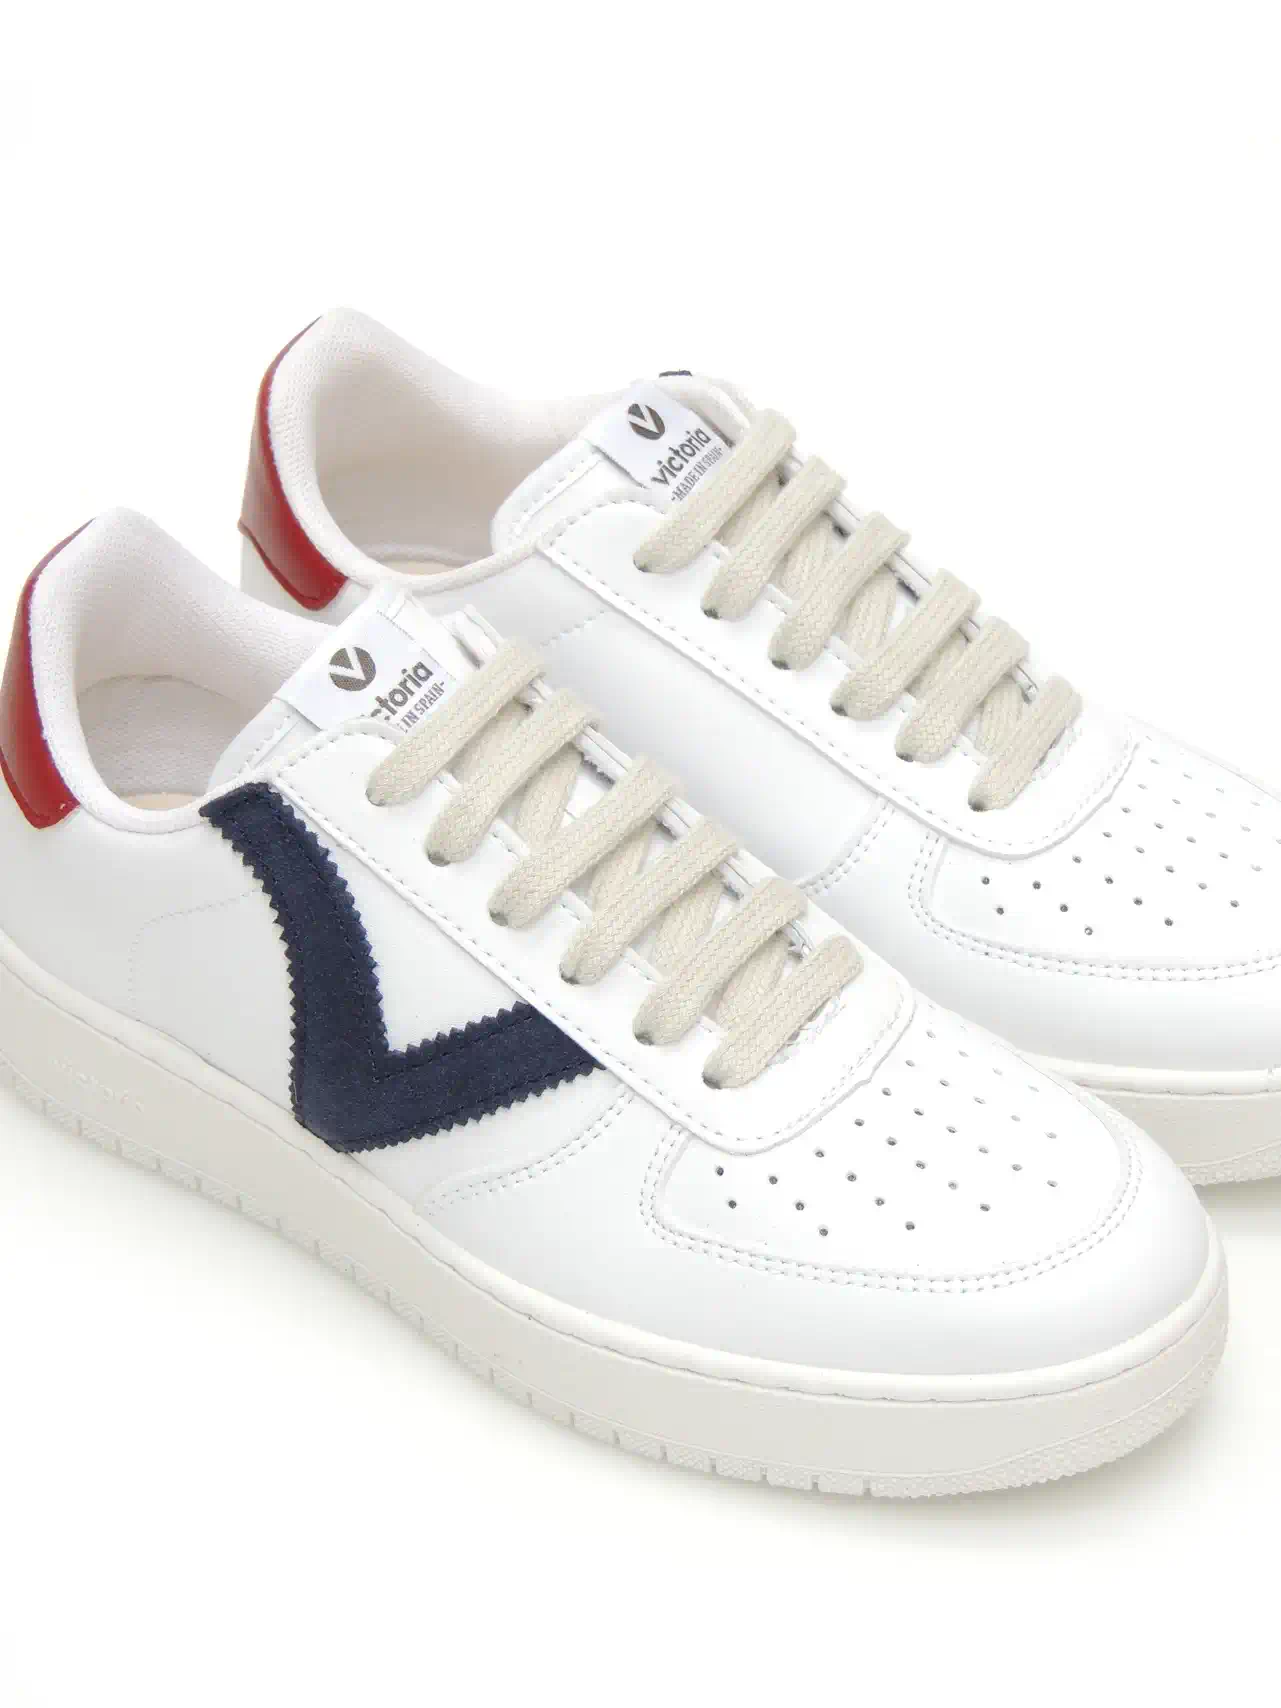 sneakers--victoria-1258201-polipiel-marino